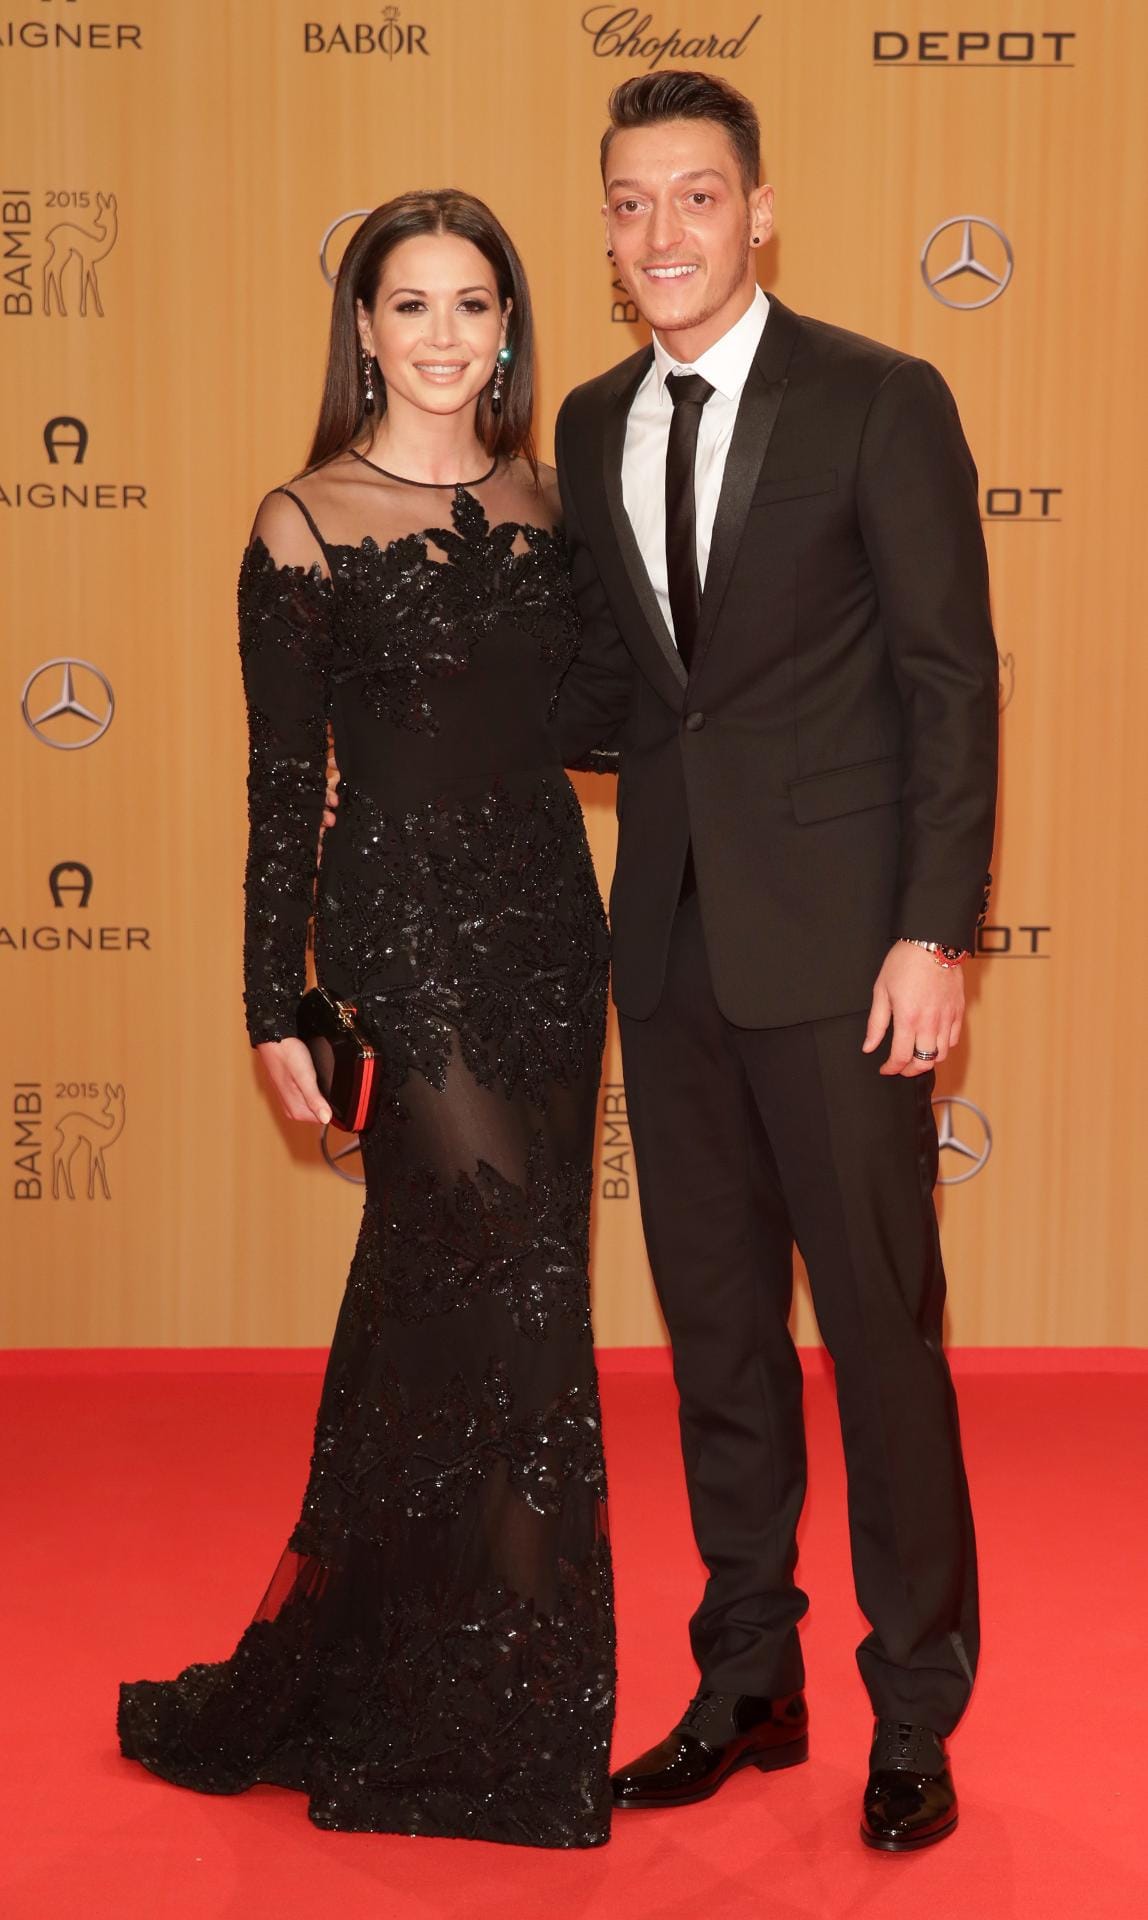 Kurz vor der Gala verkündete "bild.de" ihr Liebes-Comeback. Beim Bambi schritten sie dann bereits gemeinsam über den roten Teppich: Nationalspieler Mesut Özil und seine Wieder-Freundin Mandy Capristo.